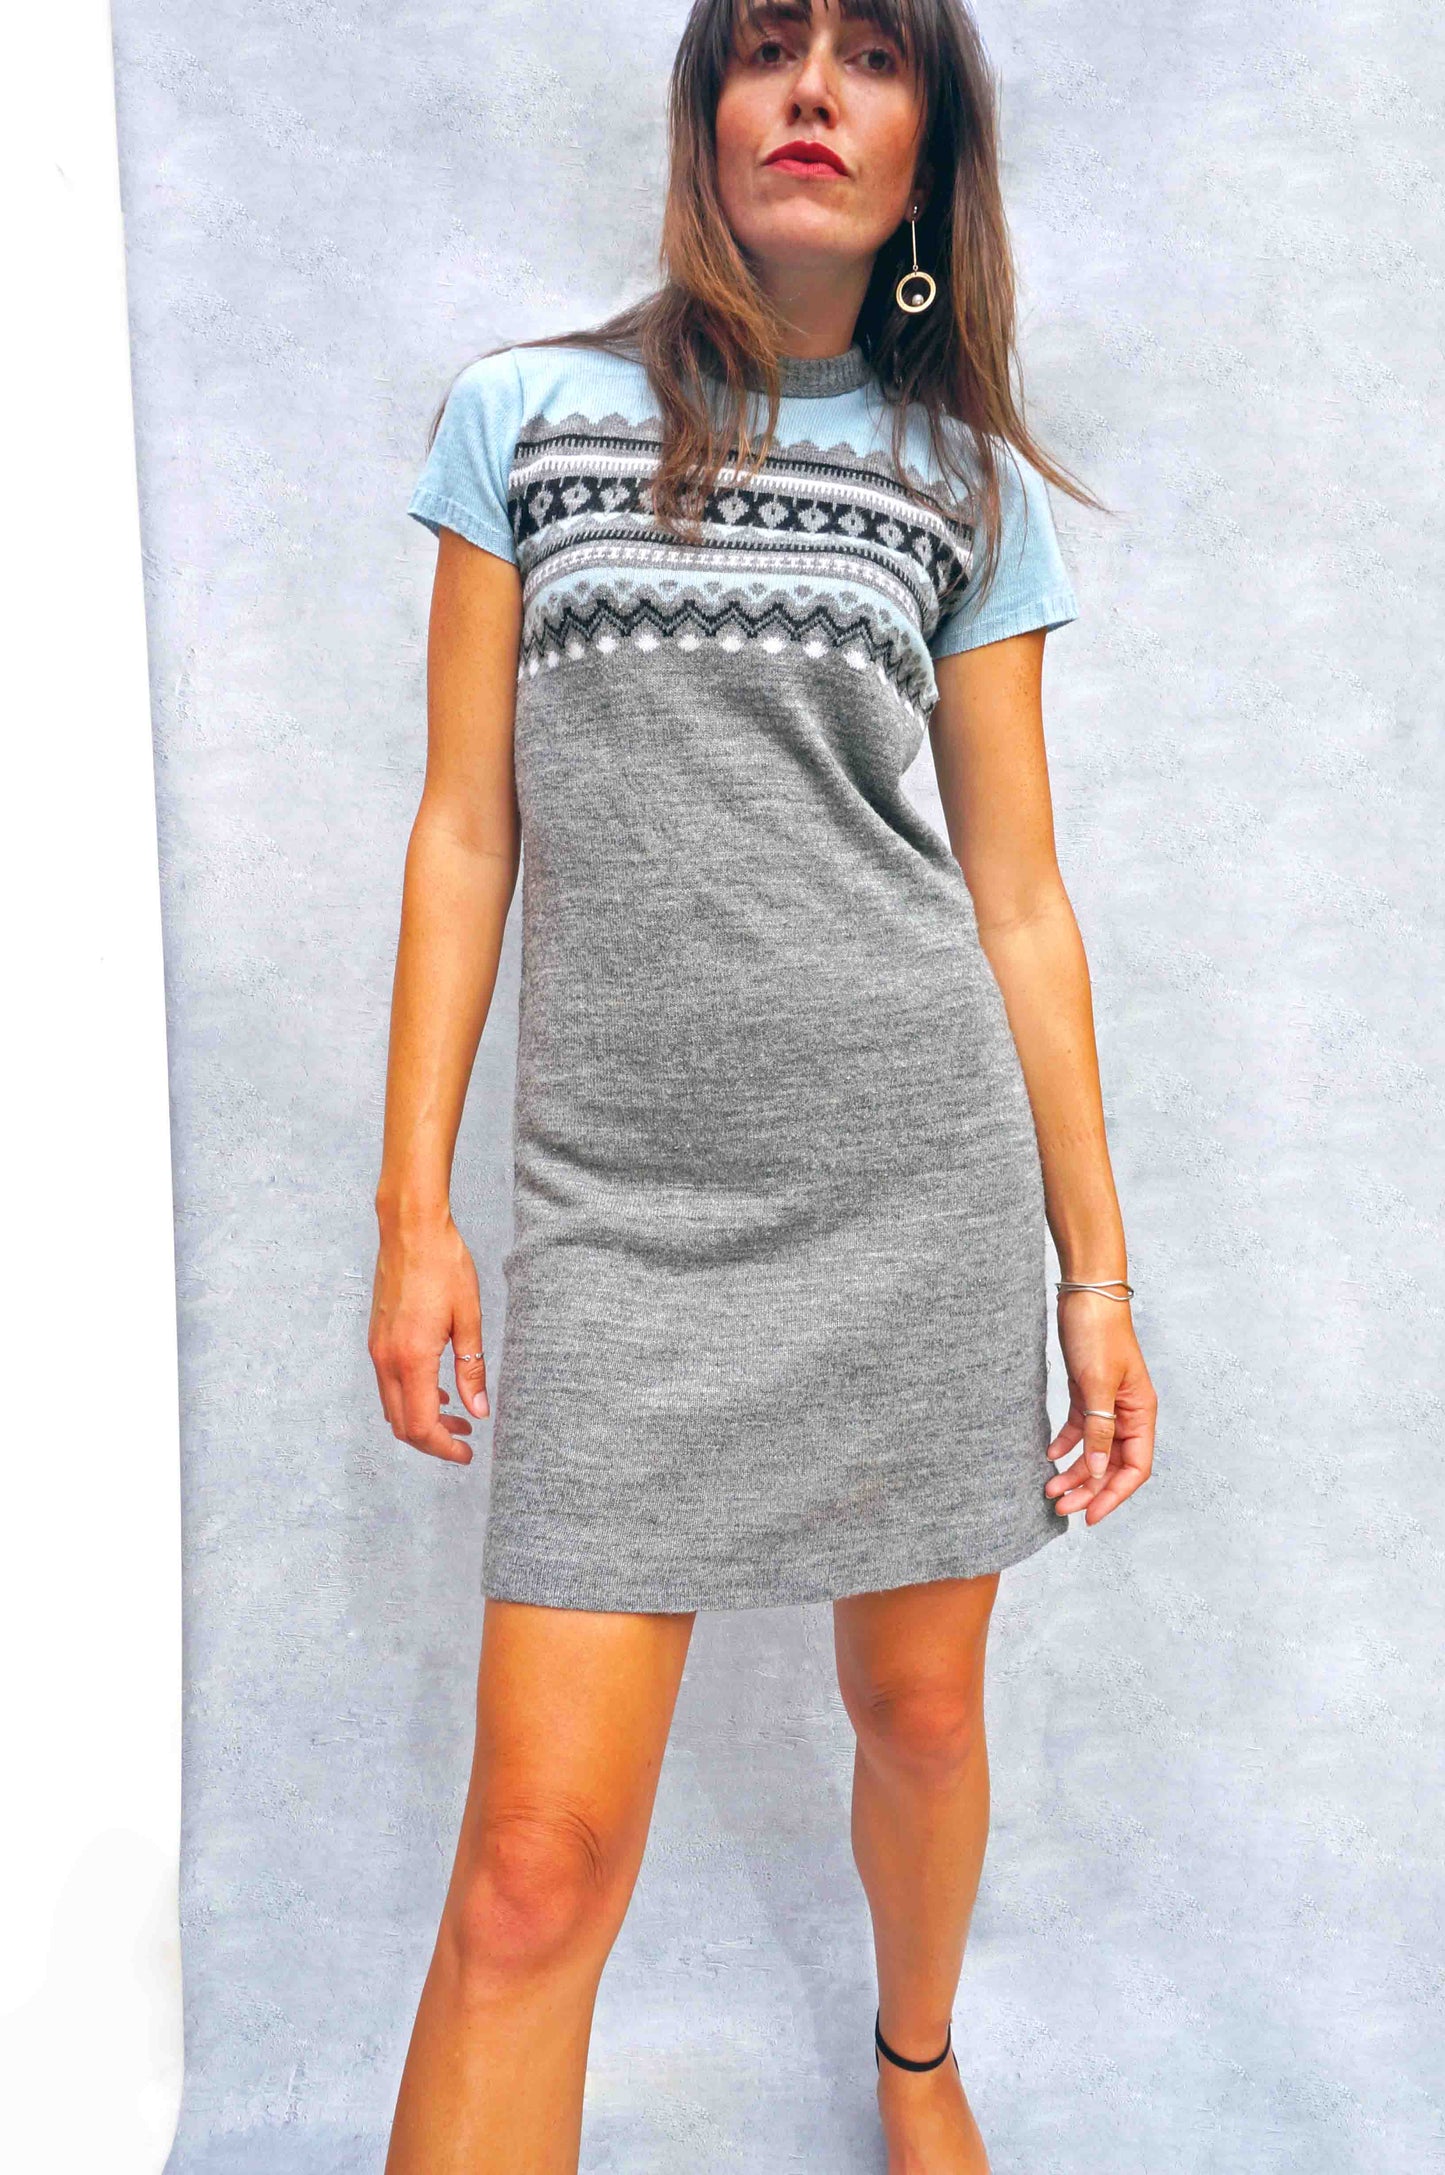 Vintage 1960s Fair Isle Sweater Dress - Ada's Attic Vintage - 